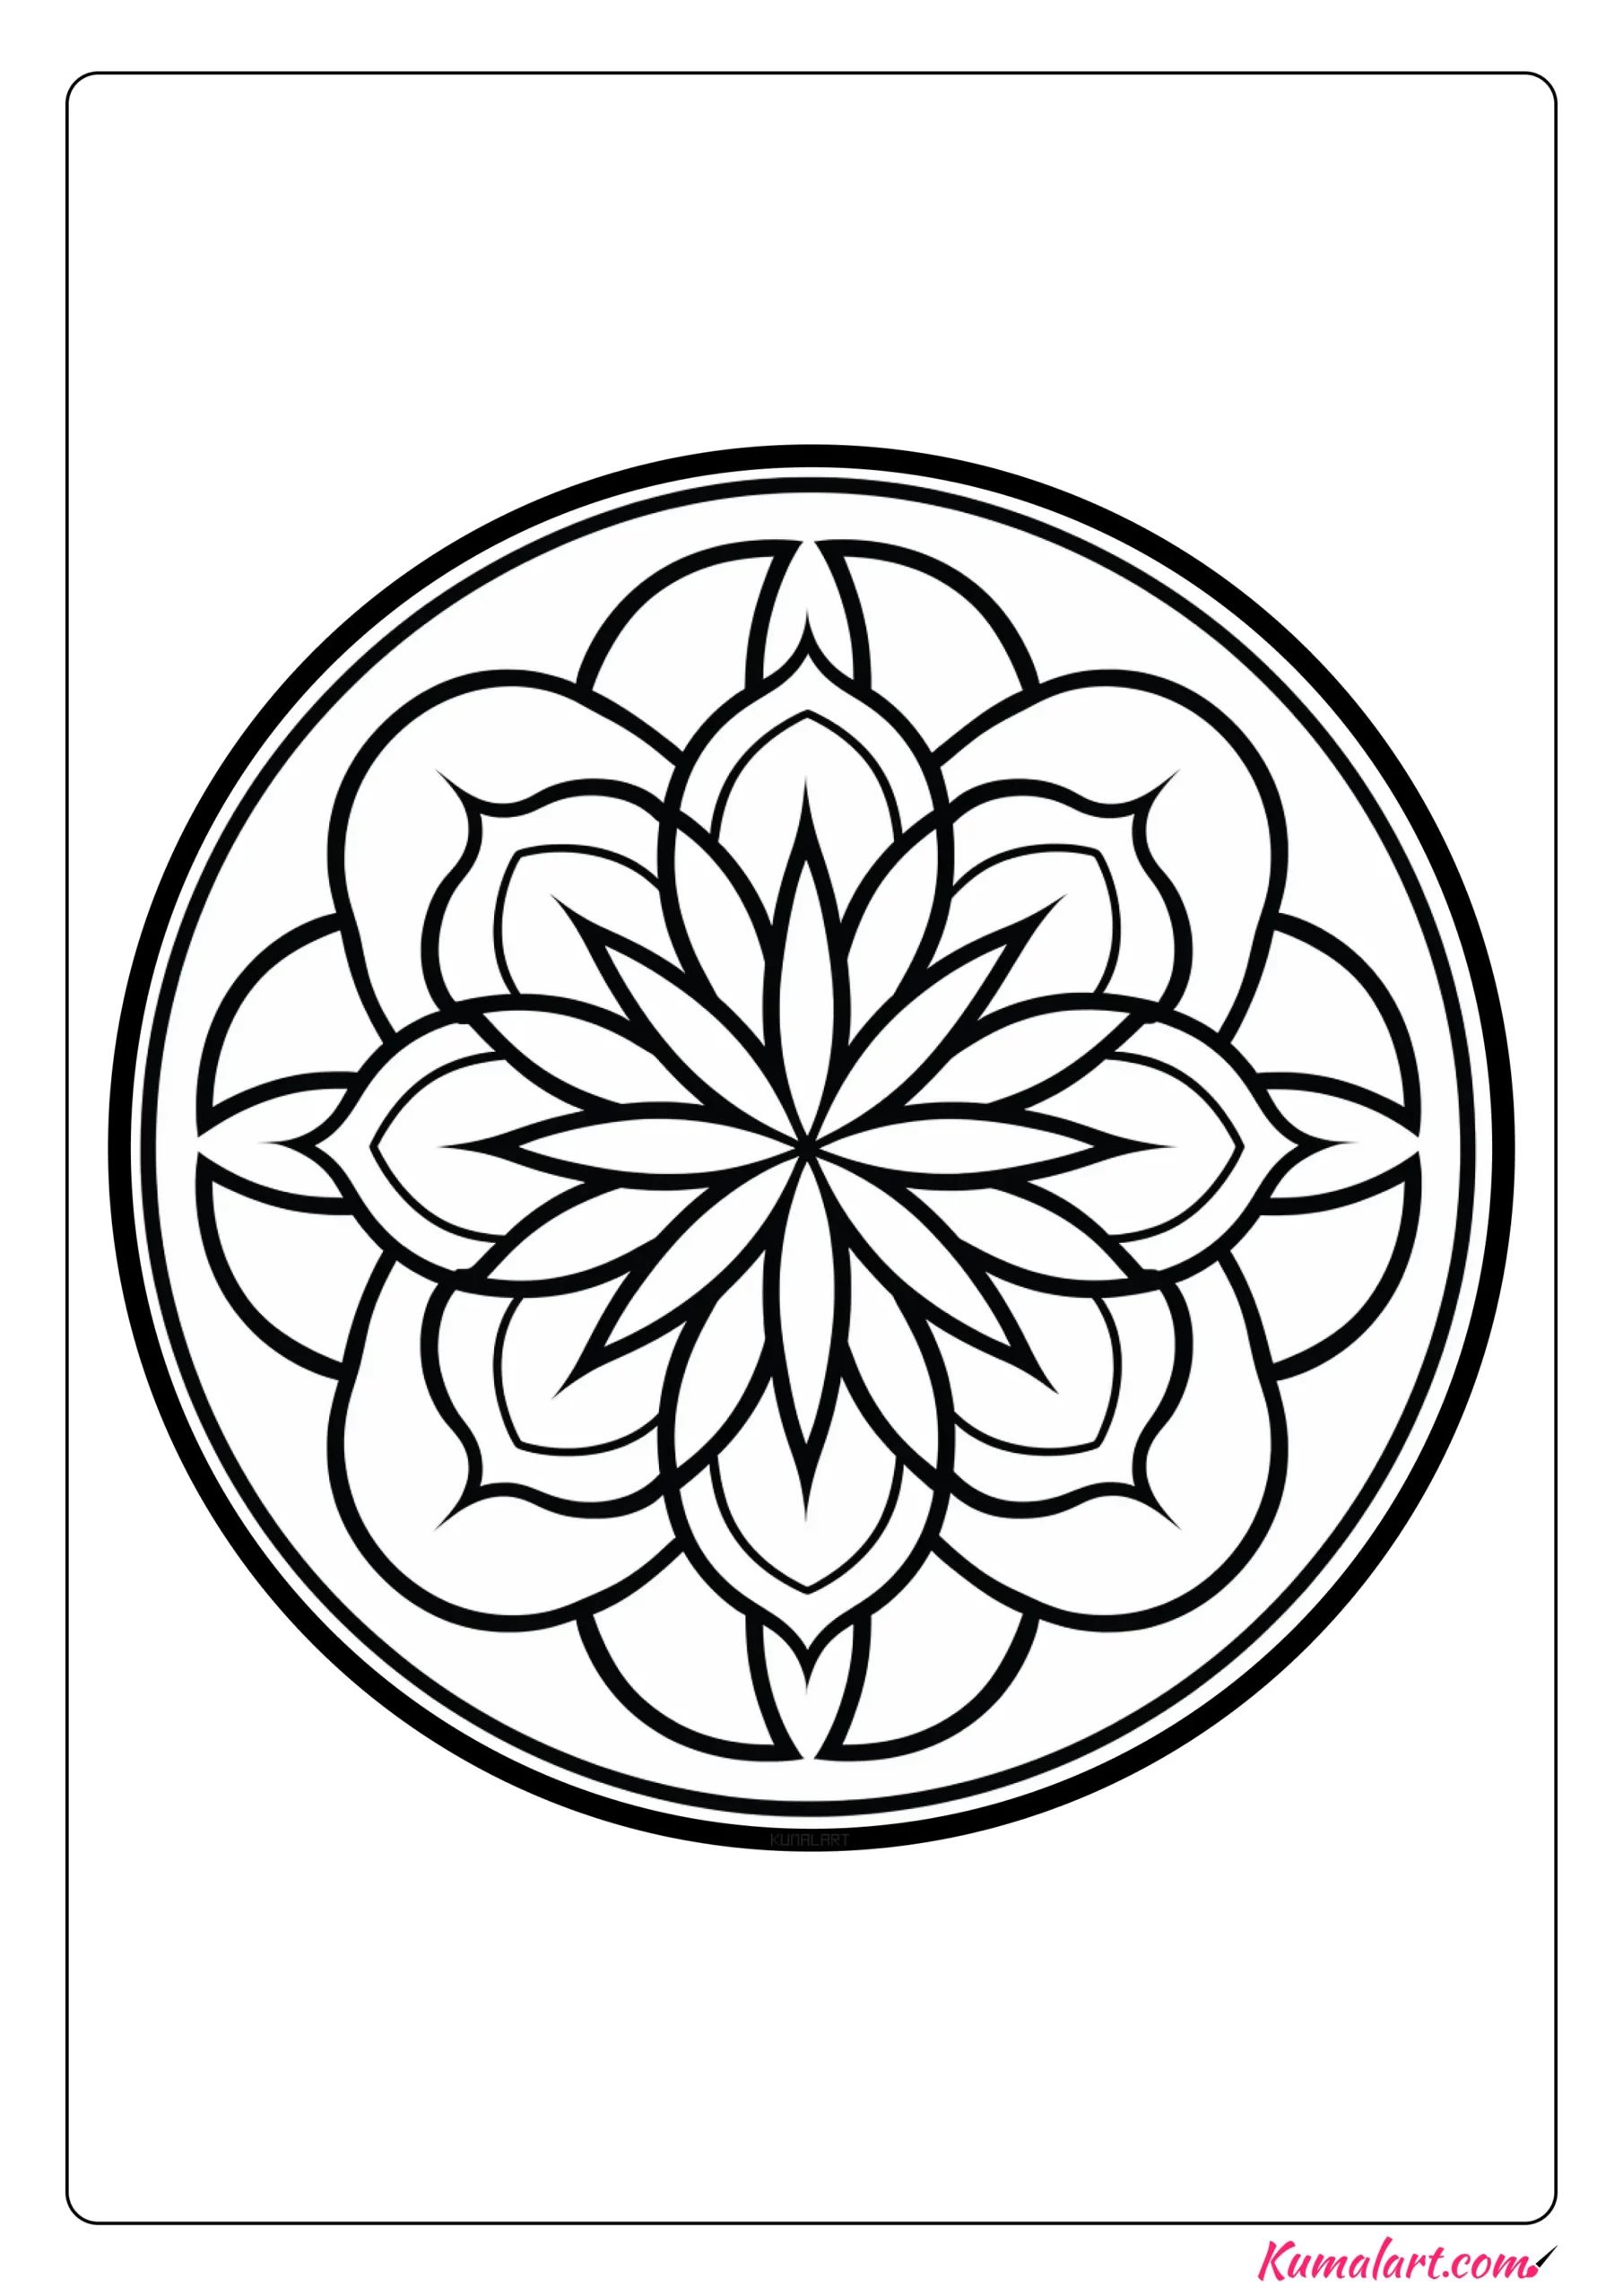 Abstract Floral Mandala Coloring Page